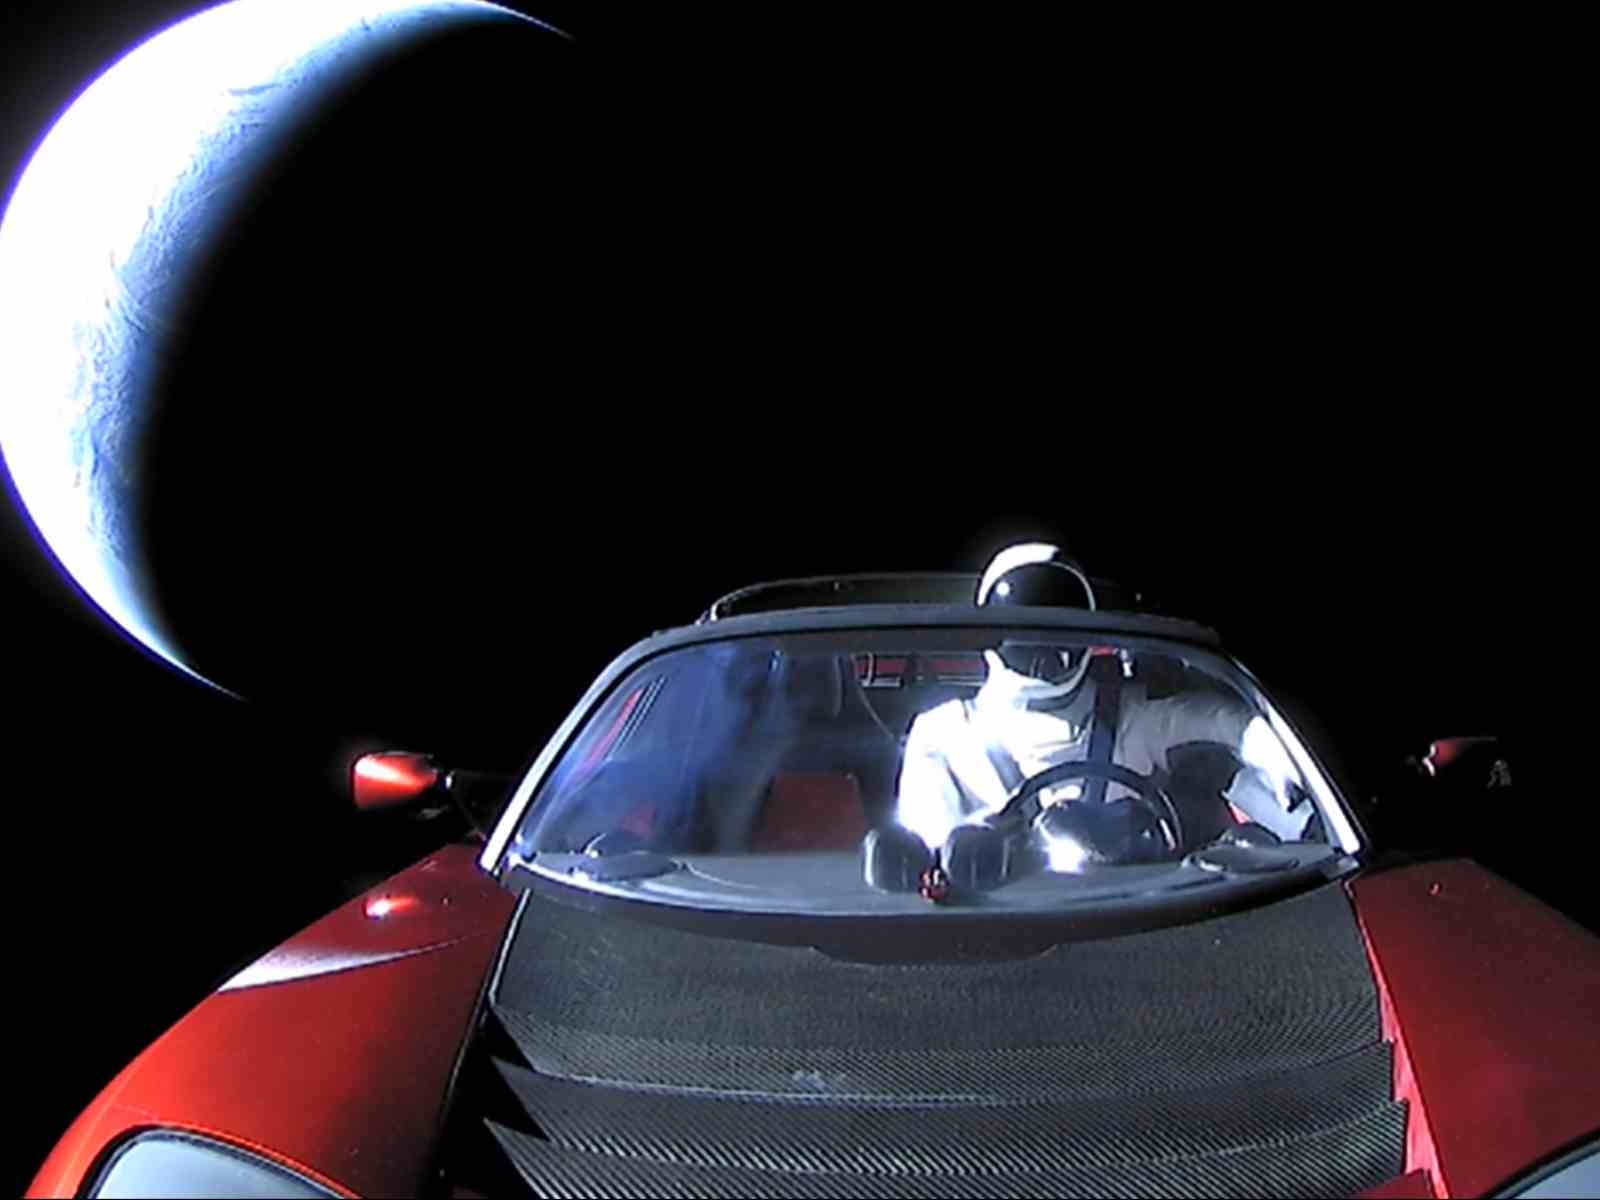 馬斯克把特斯拉 Roadster 跑車送到太空 4 年，現已繞太陽 2.6 圈、里程數達 32 億公里！